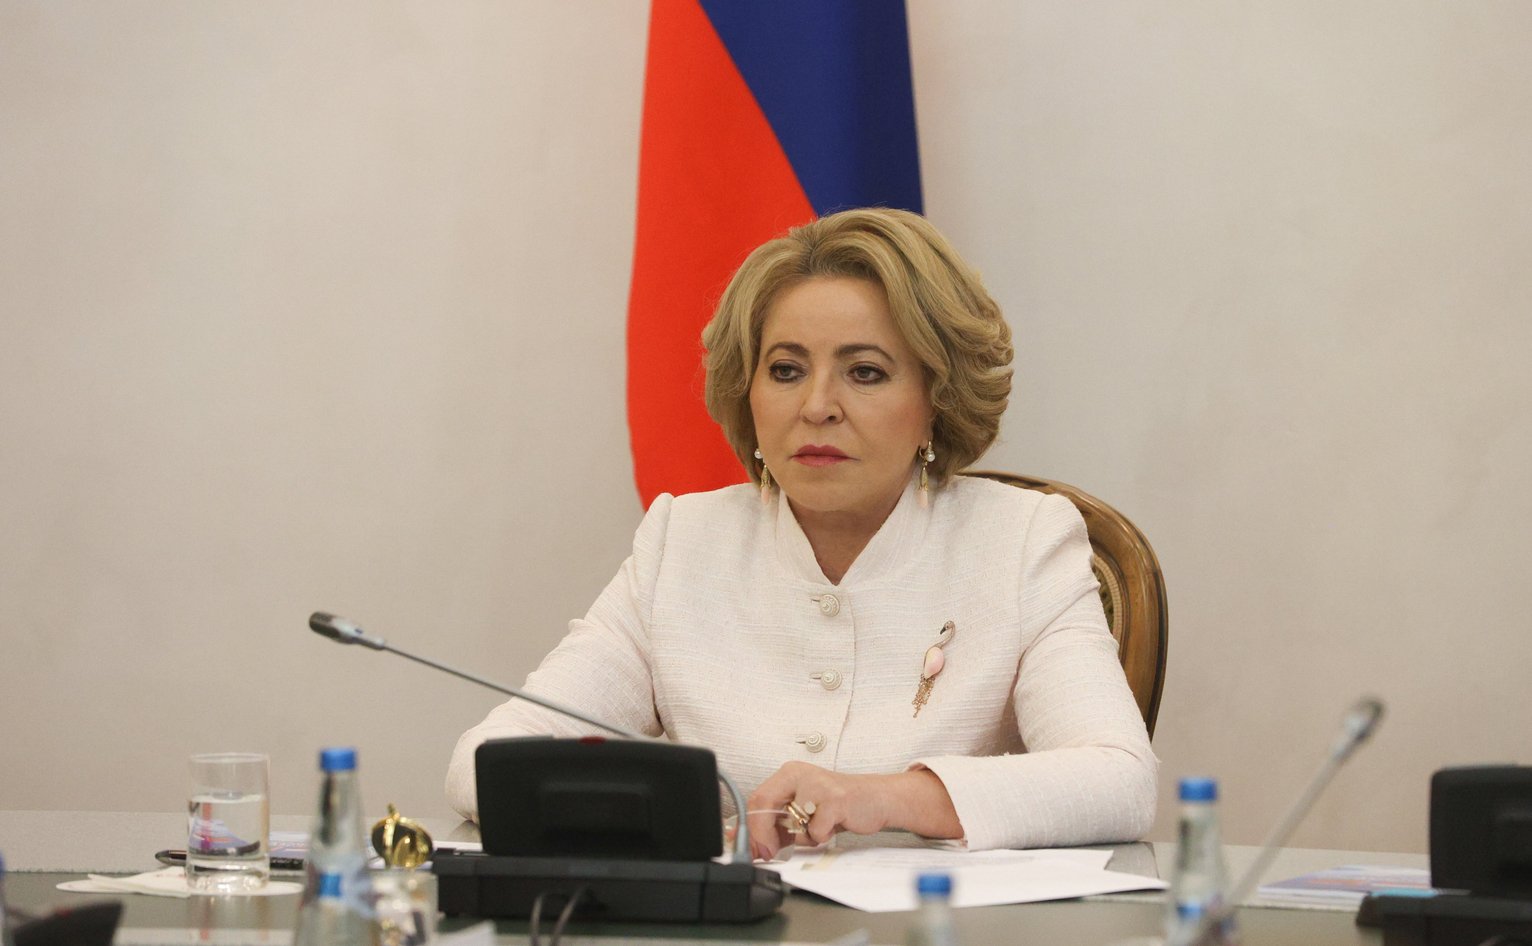 Матвиенко предложила Кочановой не визировать бюджет Союзного государства до появления там реальных проектов